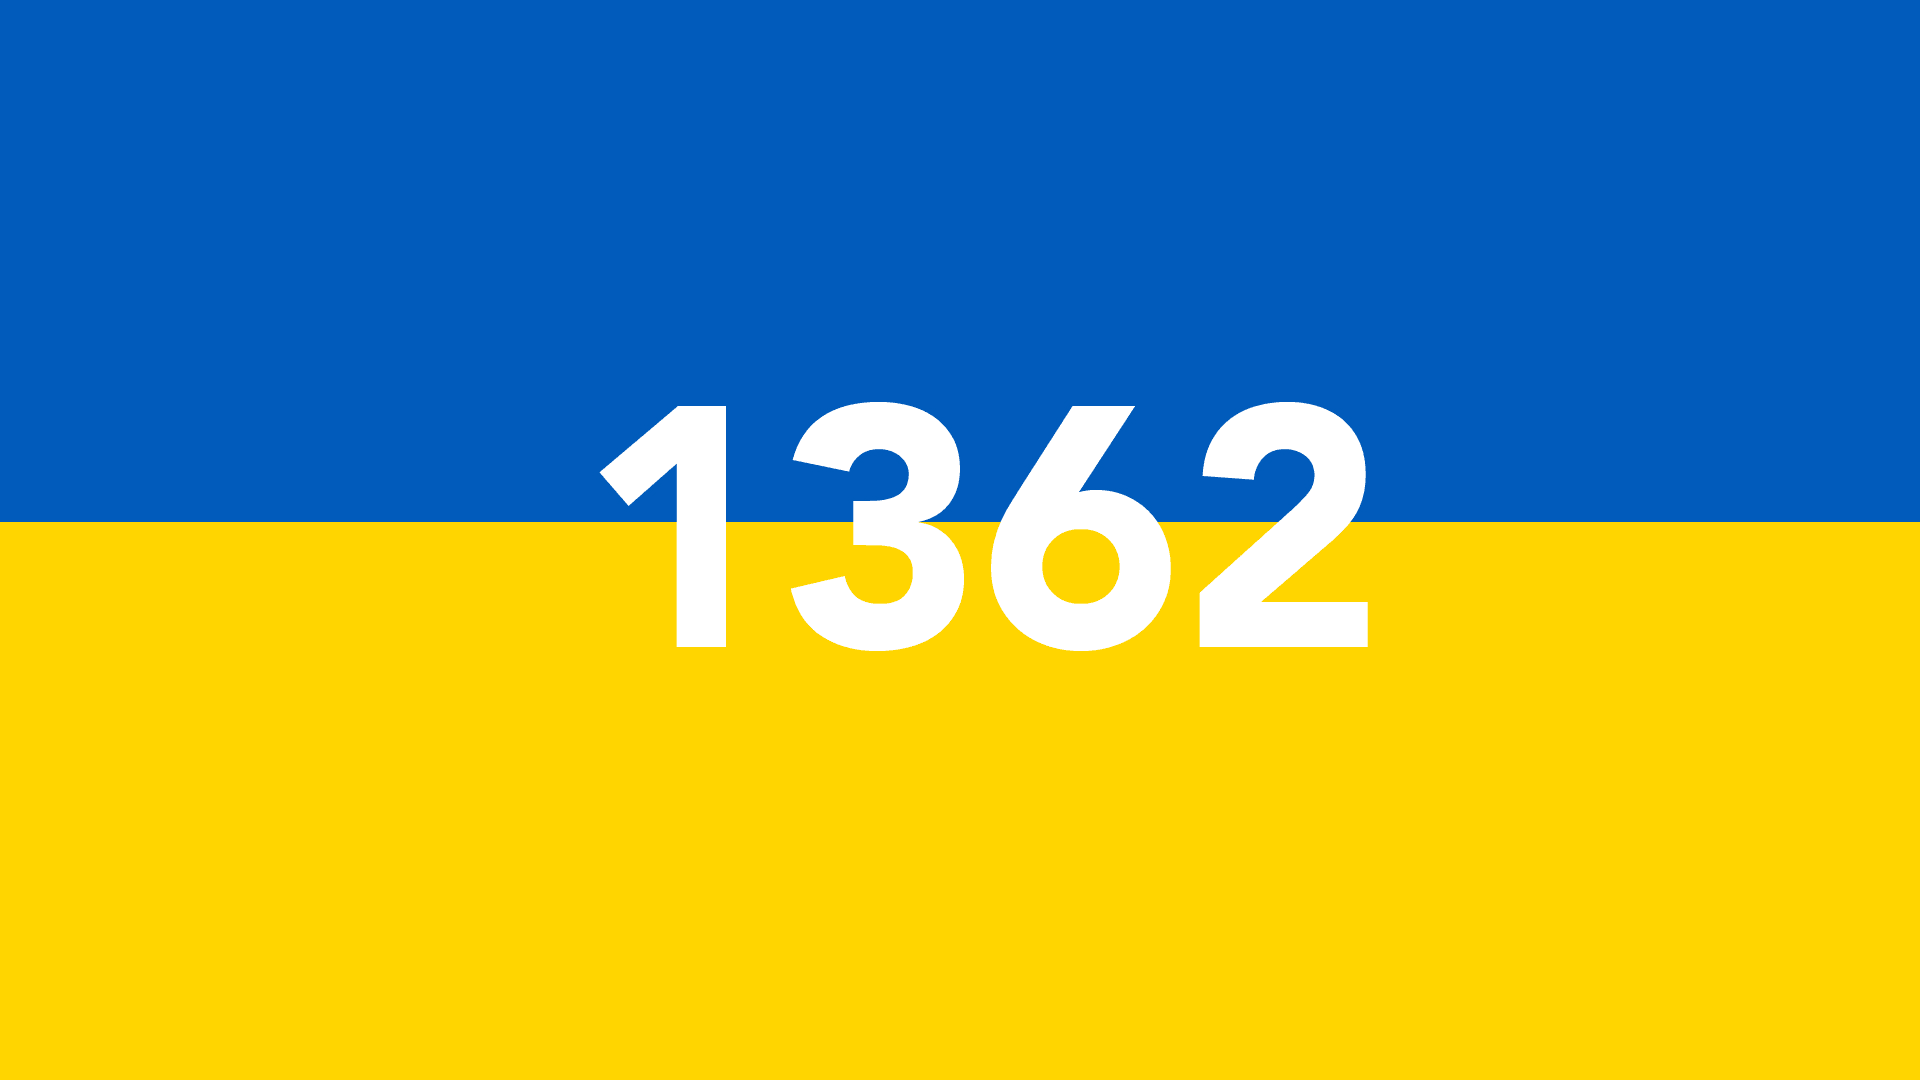 1362